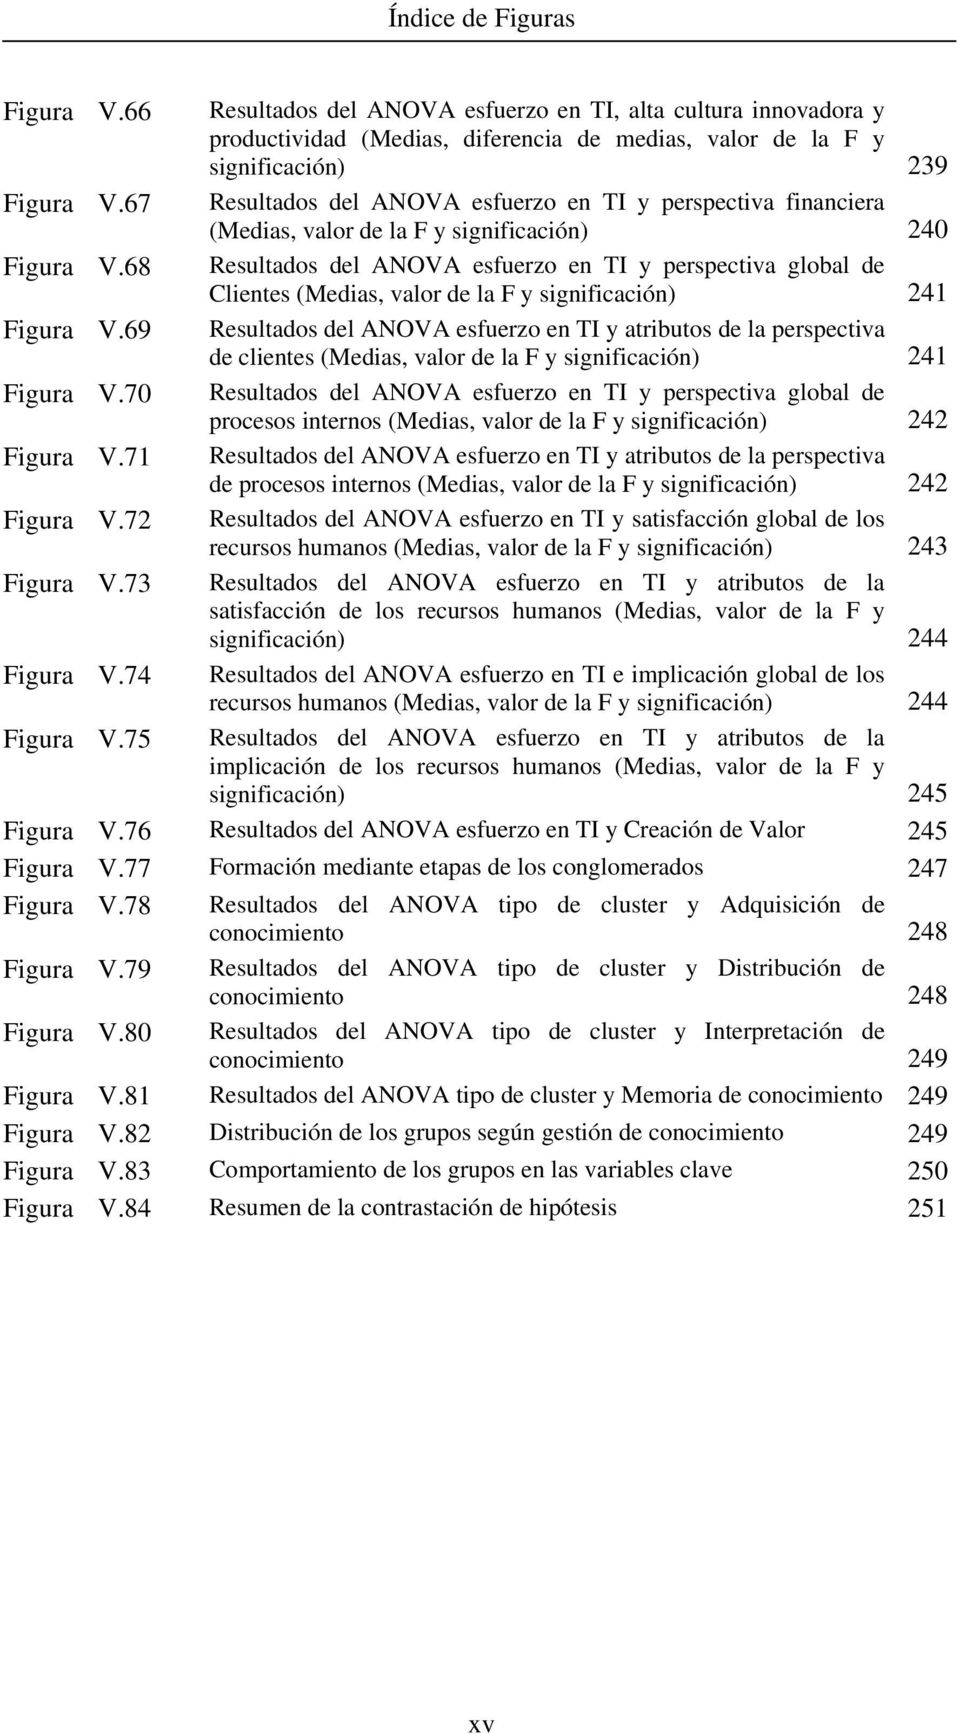 68 Resultados del ANOVA esfuerzo en TI y perspectiva global de Clientes (Medias, valor de la F y significación) 241 Figura V.